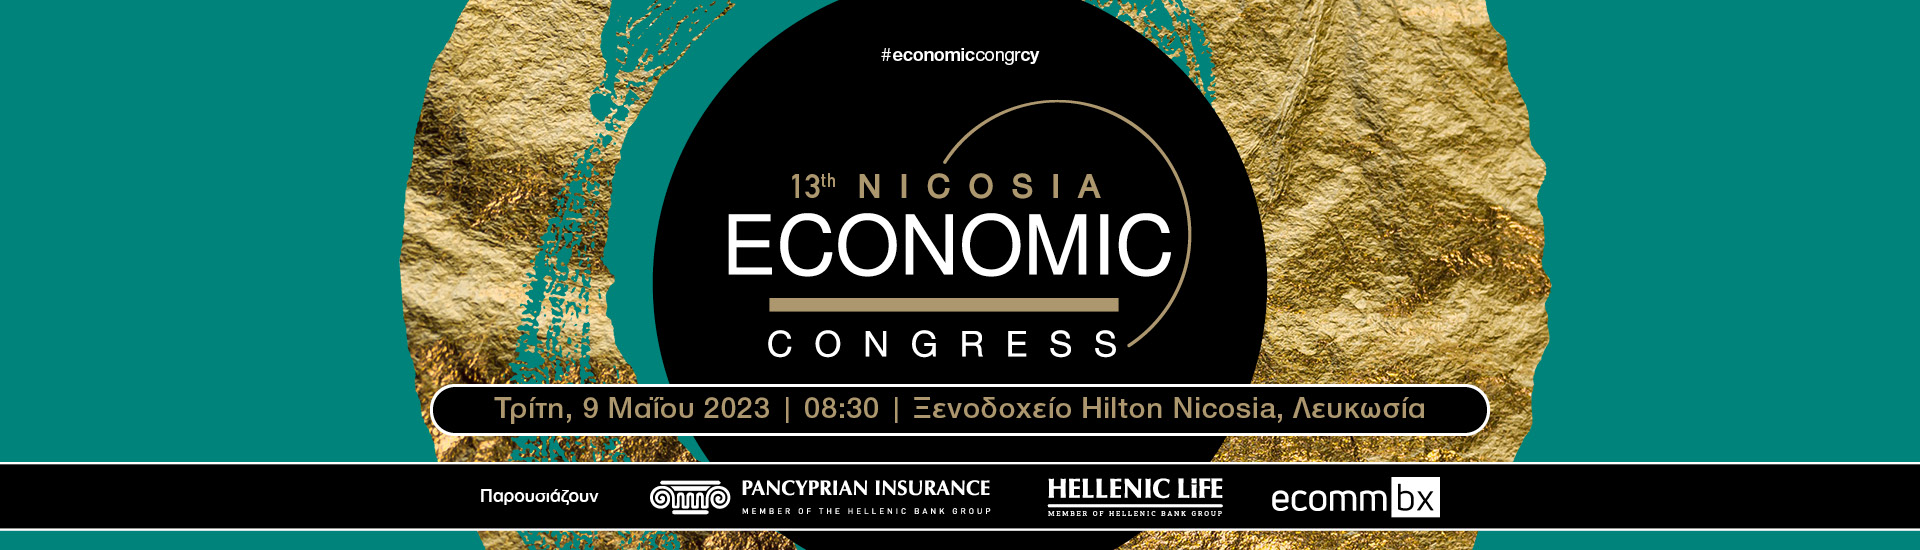 13th Nicosia Economic Congress